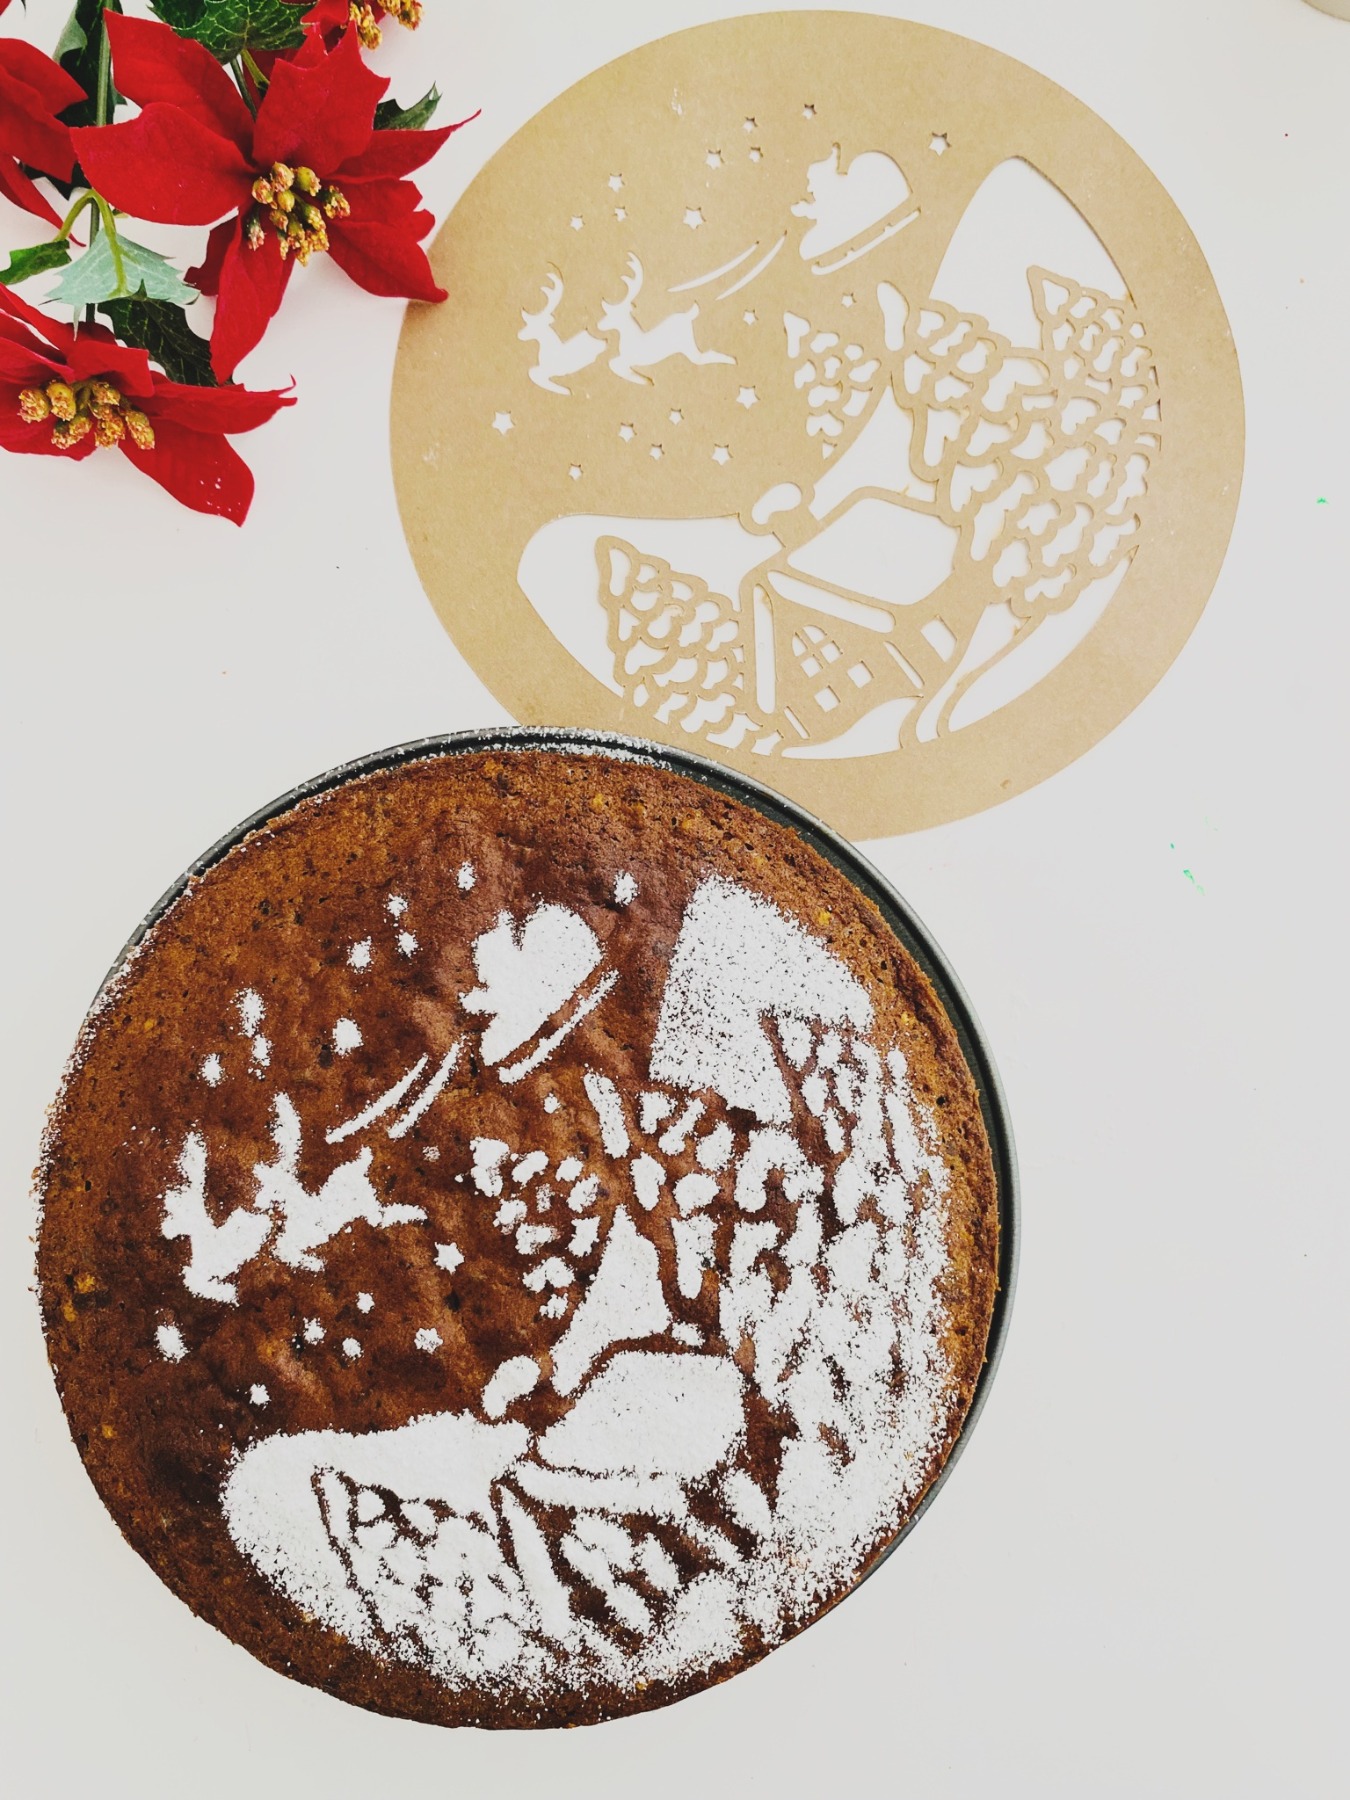 Kuchenschablone Weihnachten - Winterlandschaft Weihnachtslandschaft für einen Schokoladenkuchen